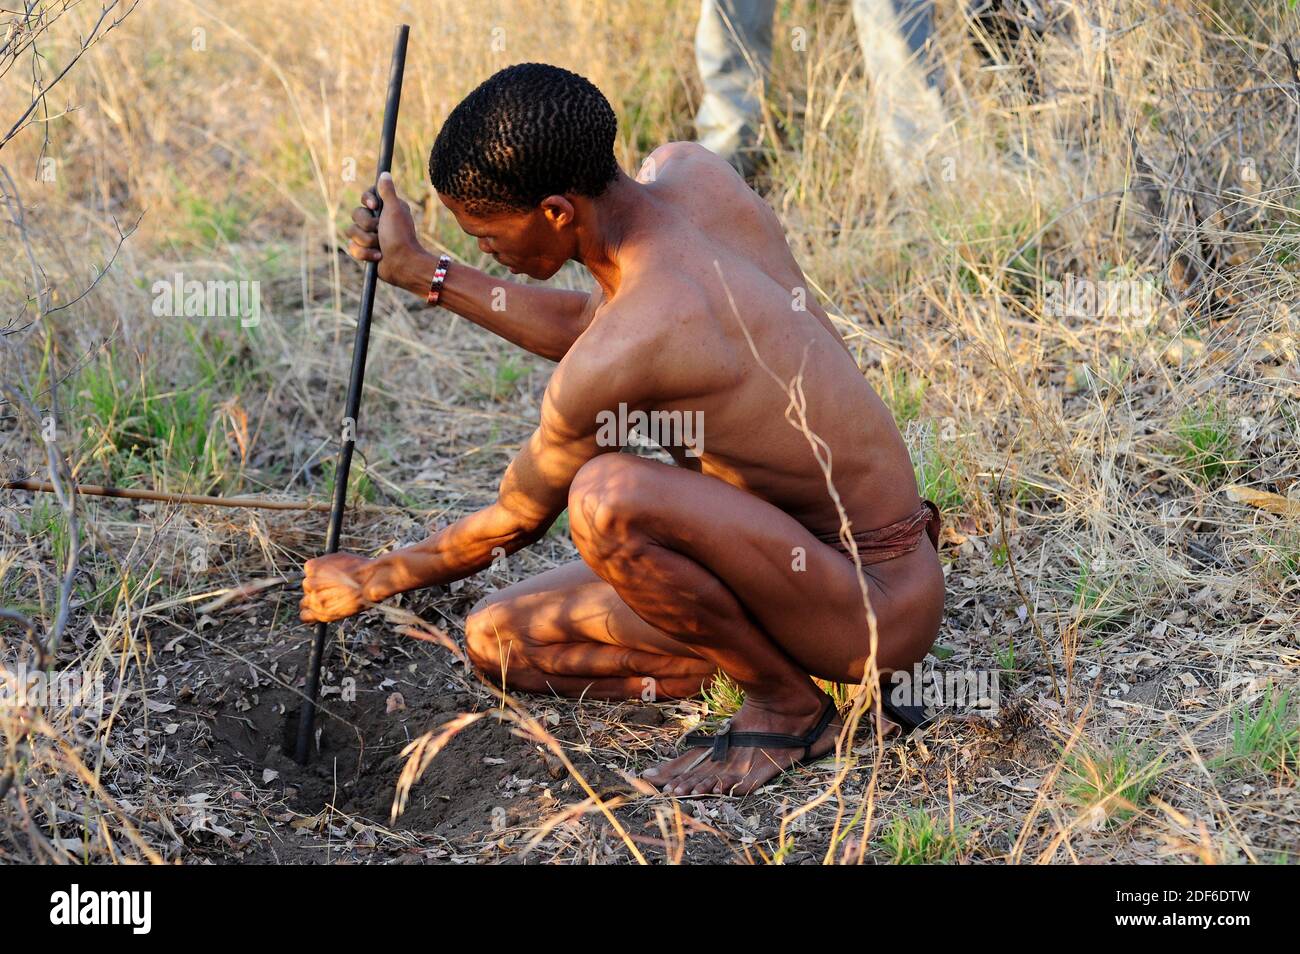 San or bushman man searching desert tubers to feed. Tsumkwe, Otjozondjupa, Namibia. Stock Photo